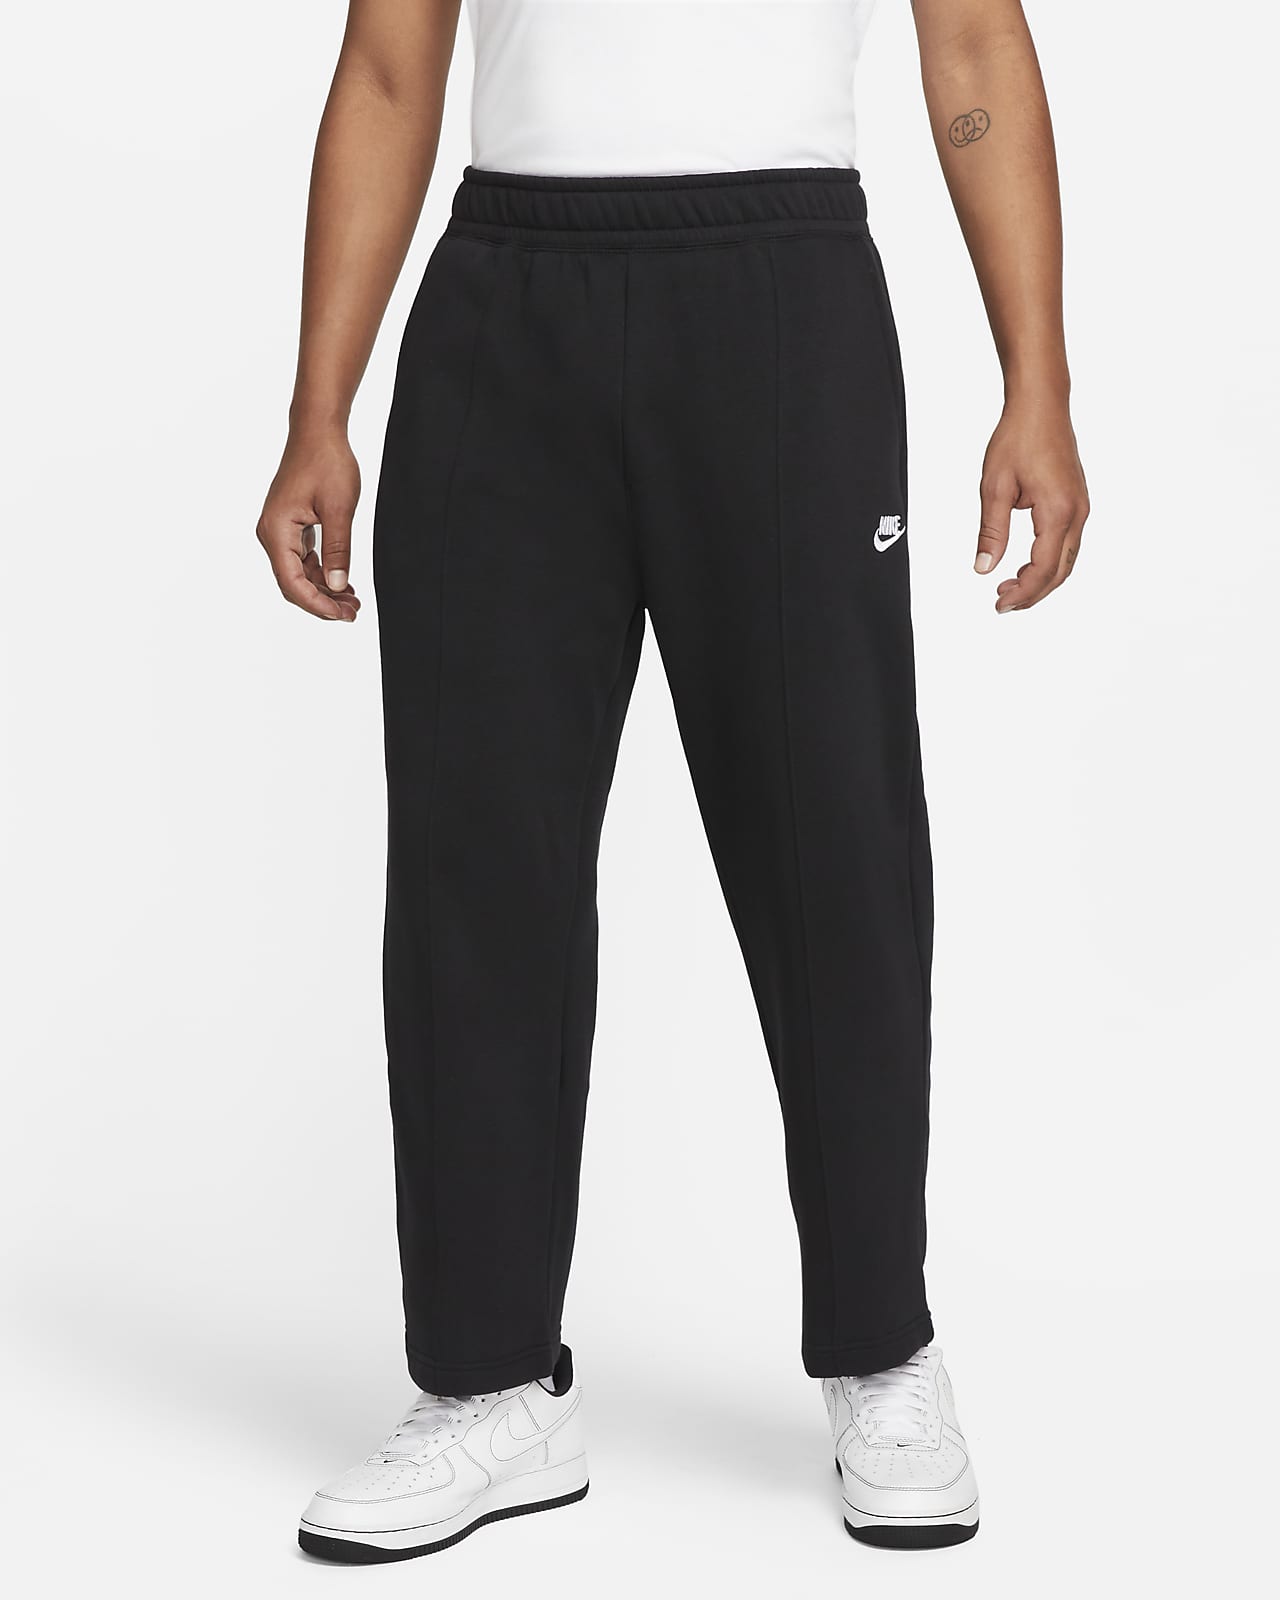 Nike Capri Pants Womens Sportswear Jersey Cotton Loose Fit Black Size Small  for sale online | eBay